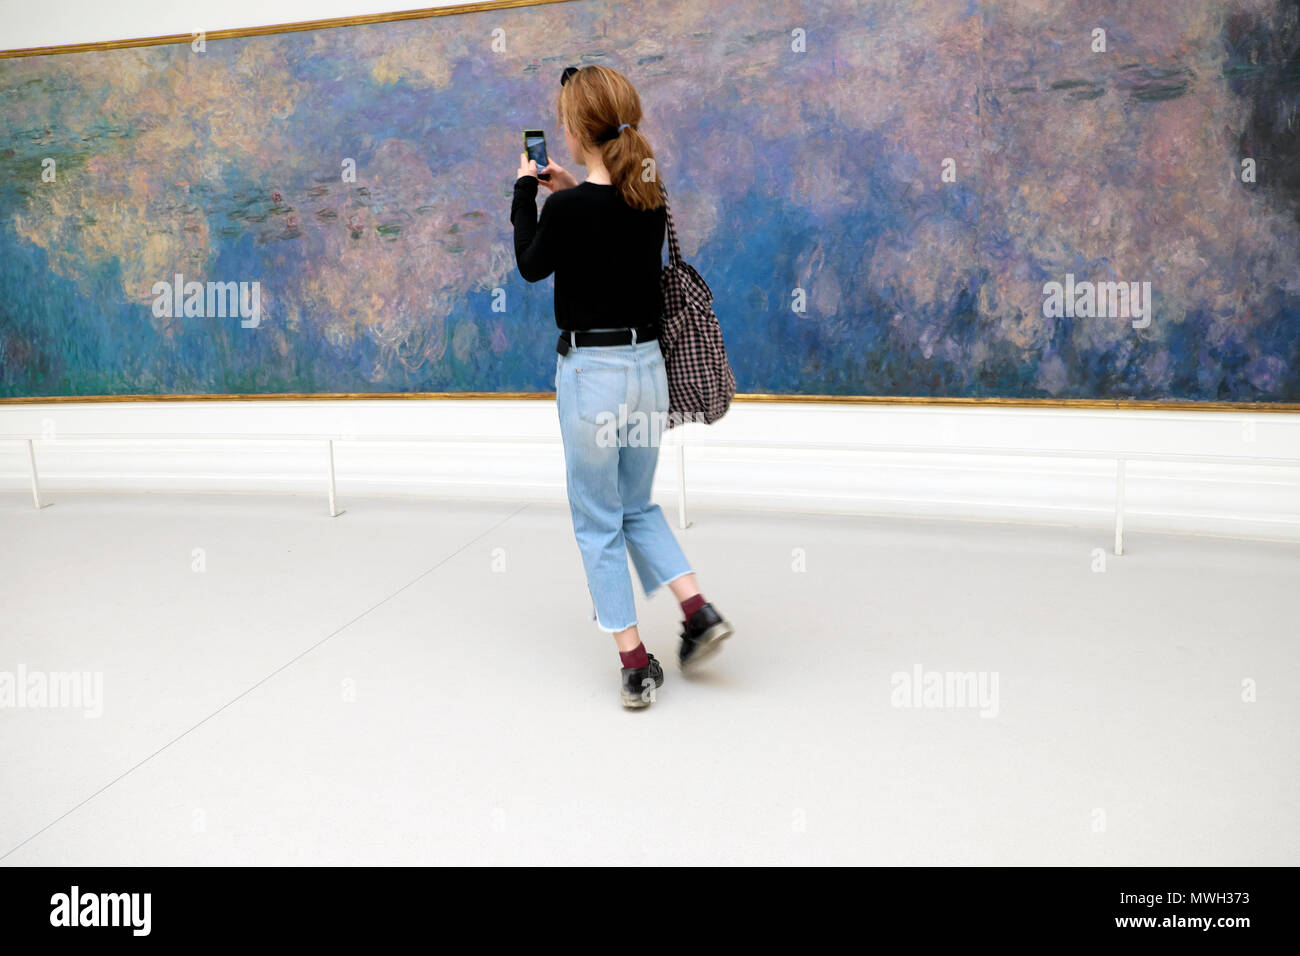 Visiteur photographiant Claude Monet Nymphéas Nymphéas peinture au Musée de l'Orangerie Jardin des Tuileries avec mobile phone in Paris France KATHY DEWITT Banque D'Images